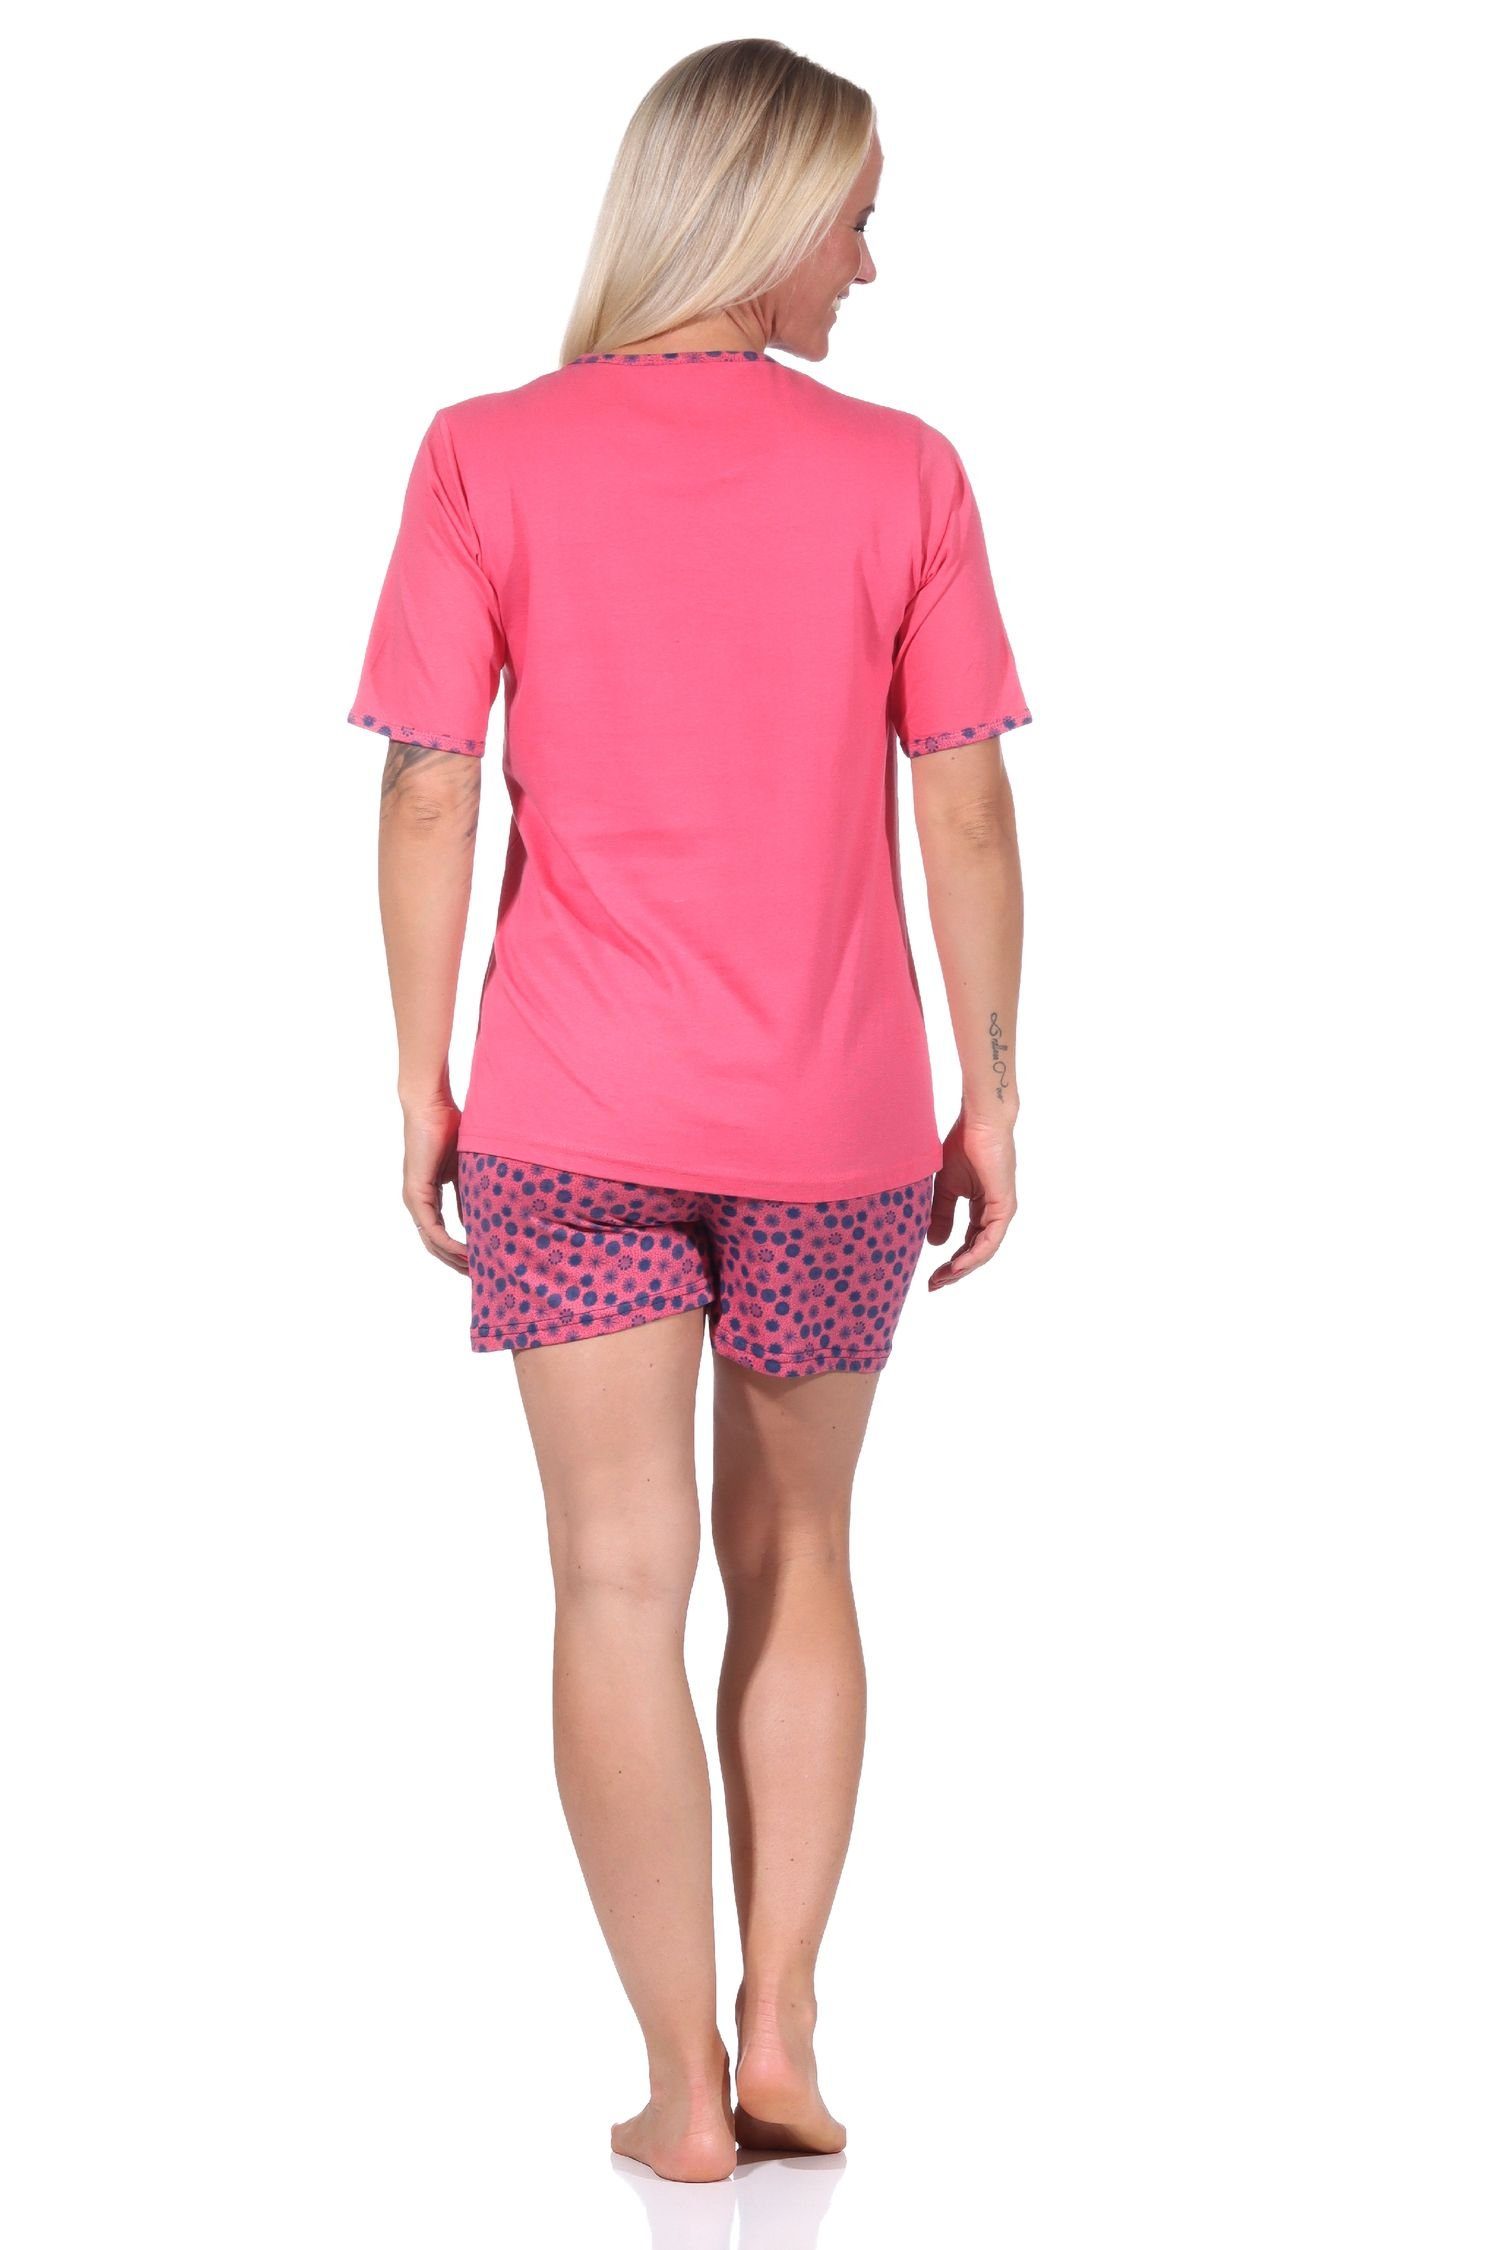 Pyjama Optik Hose Damen Shorty by pink in RELAX kurzer Normann kurzarm Schlafanzug und floraler